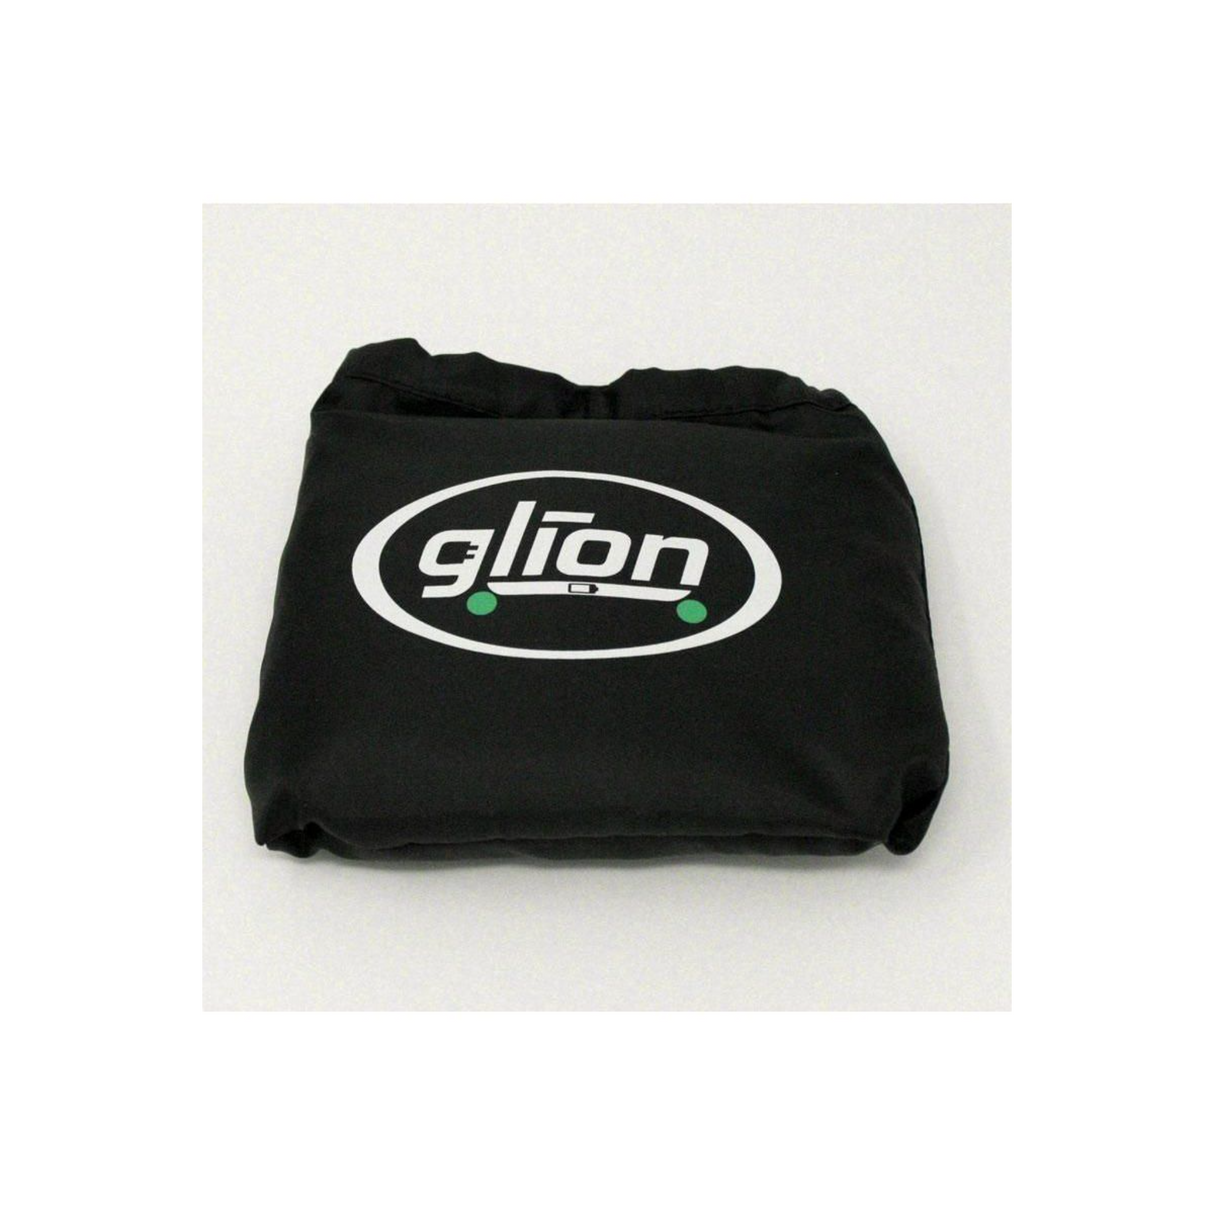 Glion Dolly 225 Black Cover Accessory GDCover